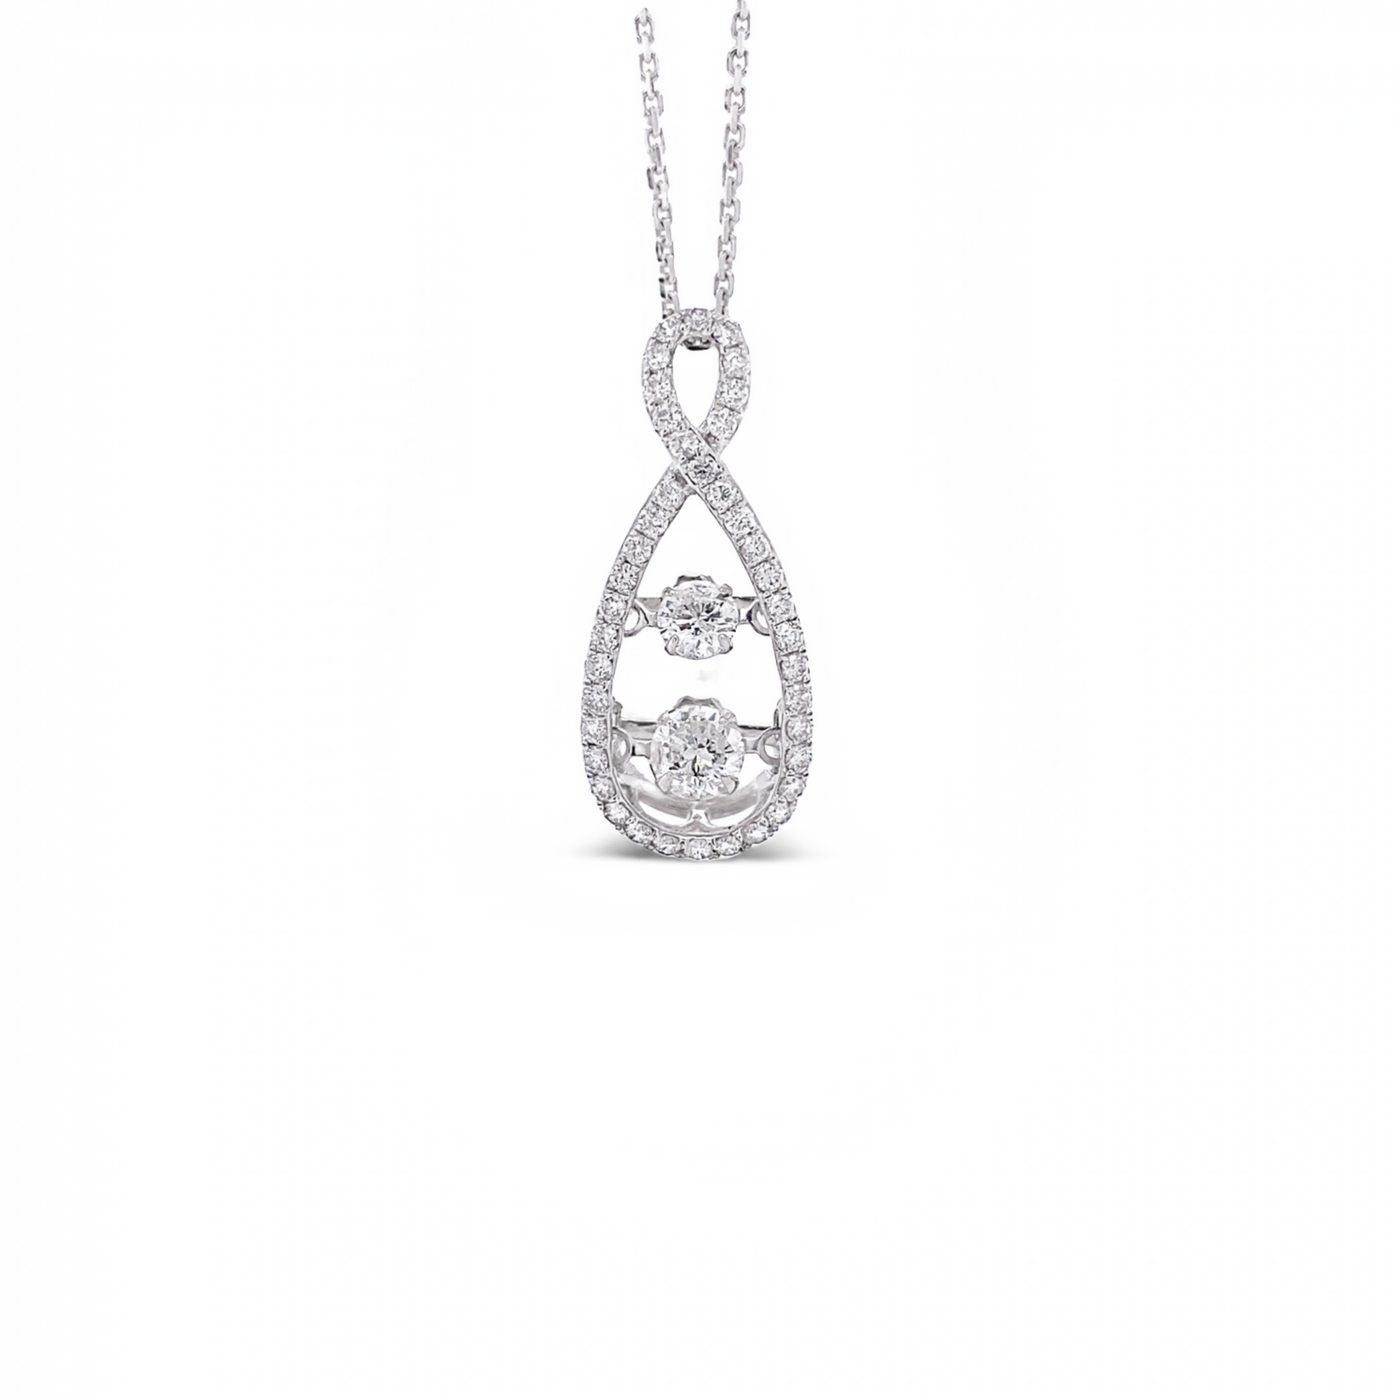 10 Karat White Gold Dancing Diamond Necklace